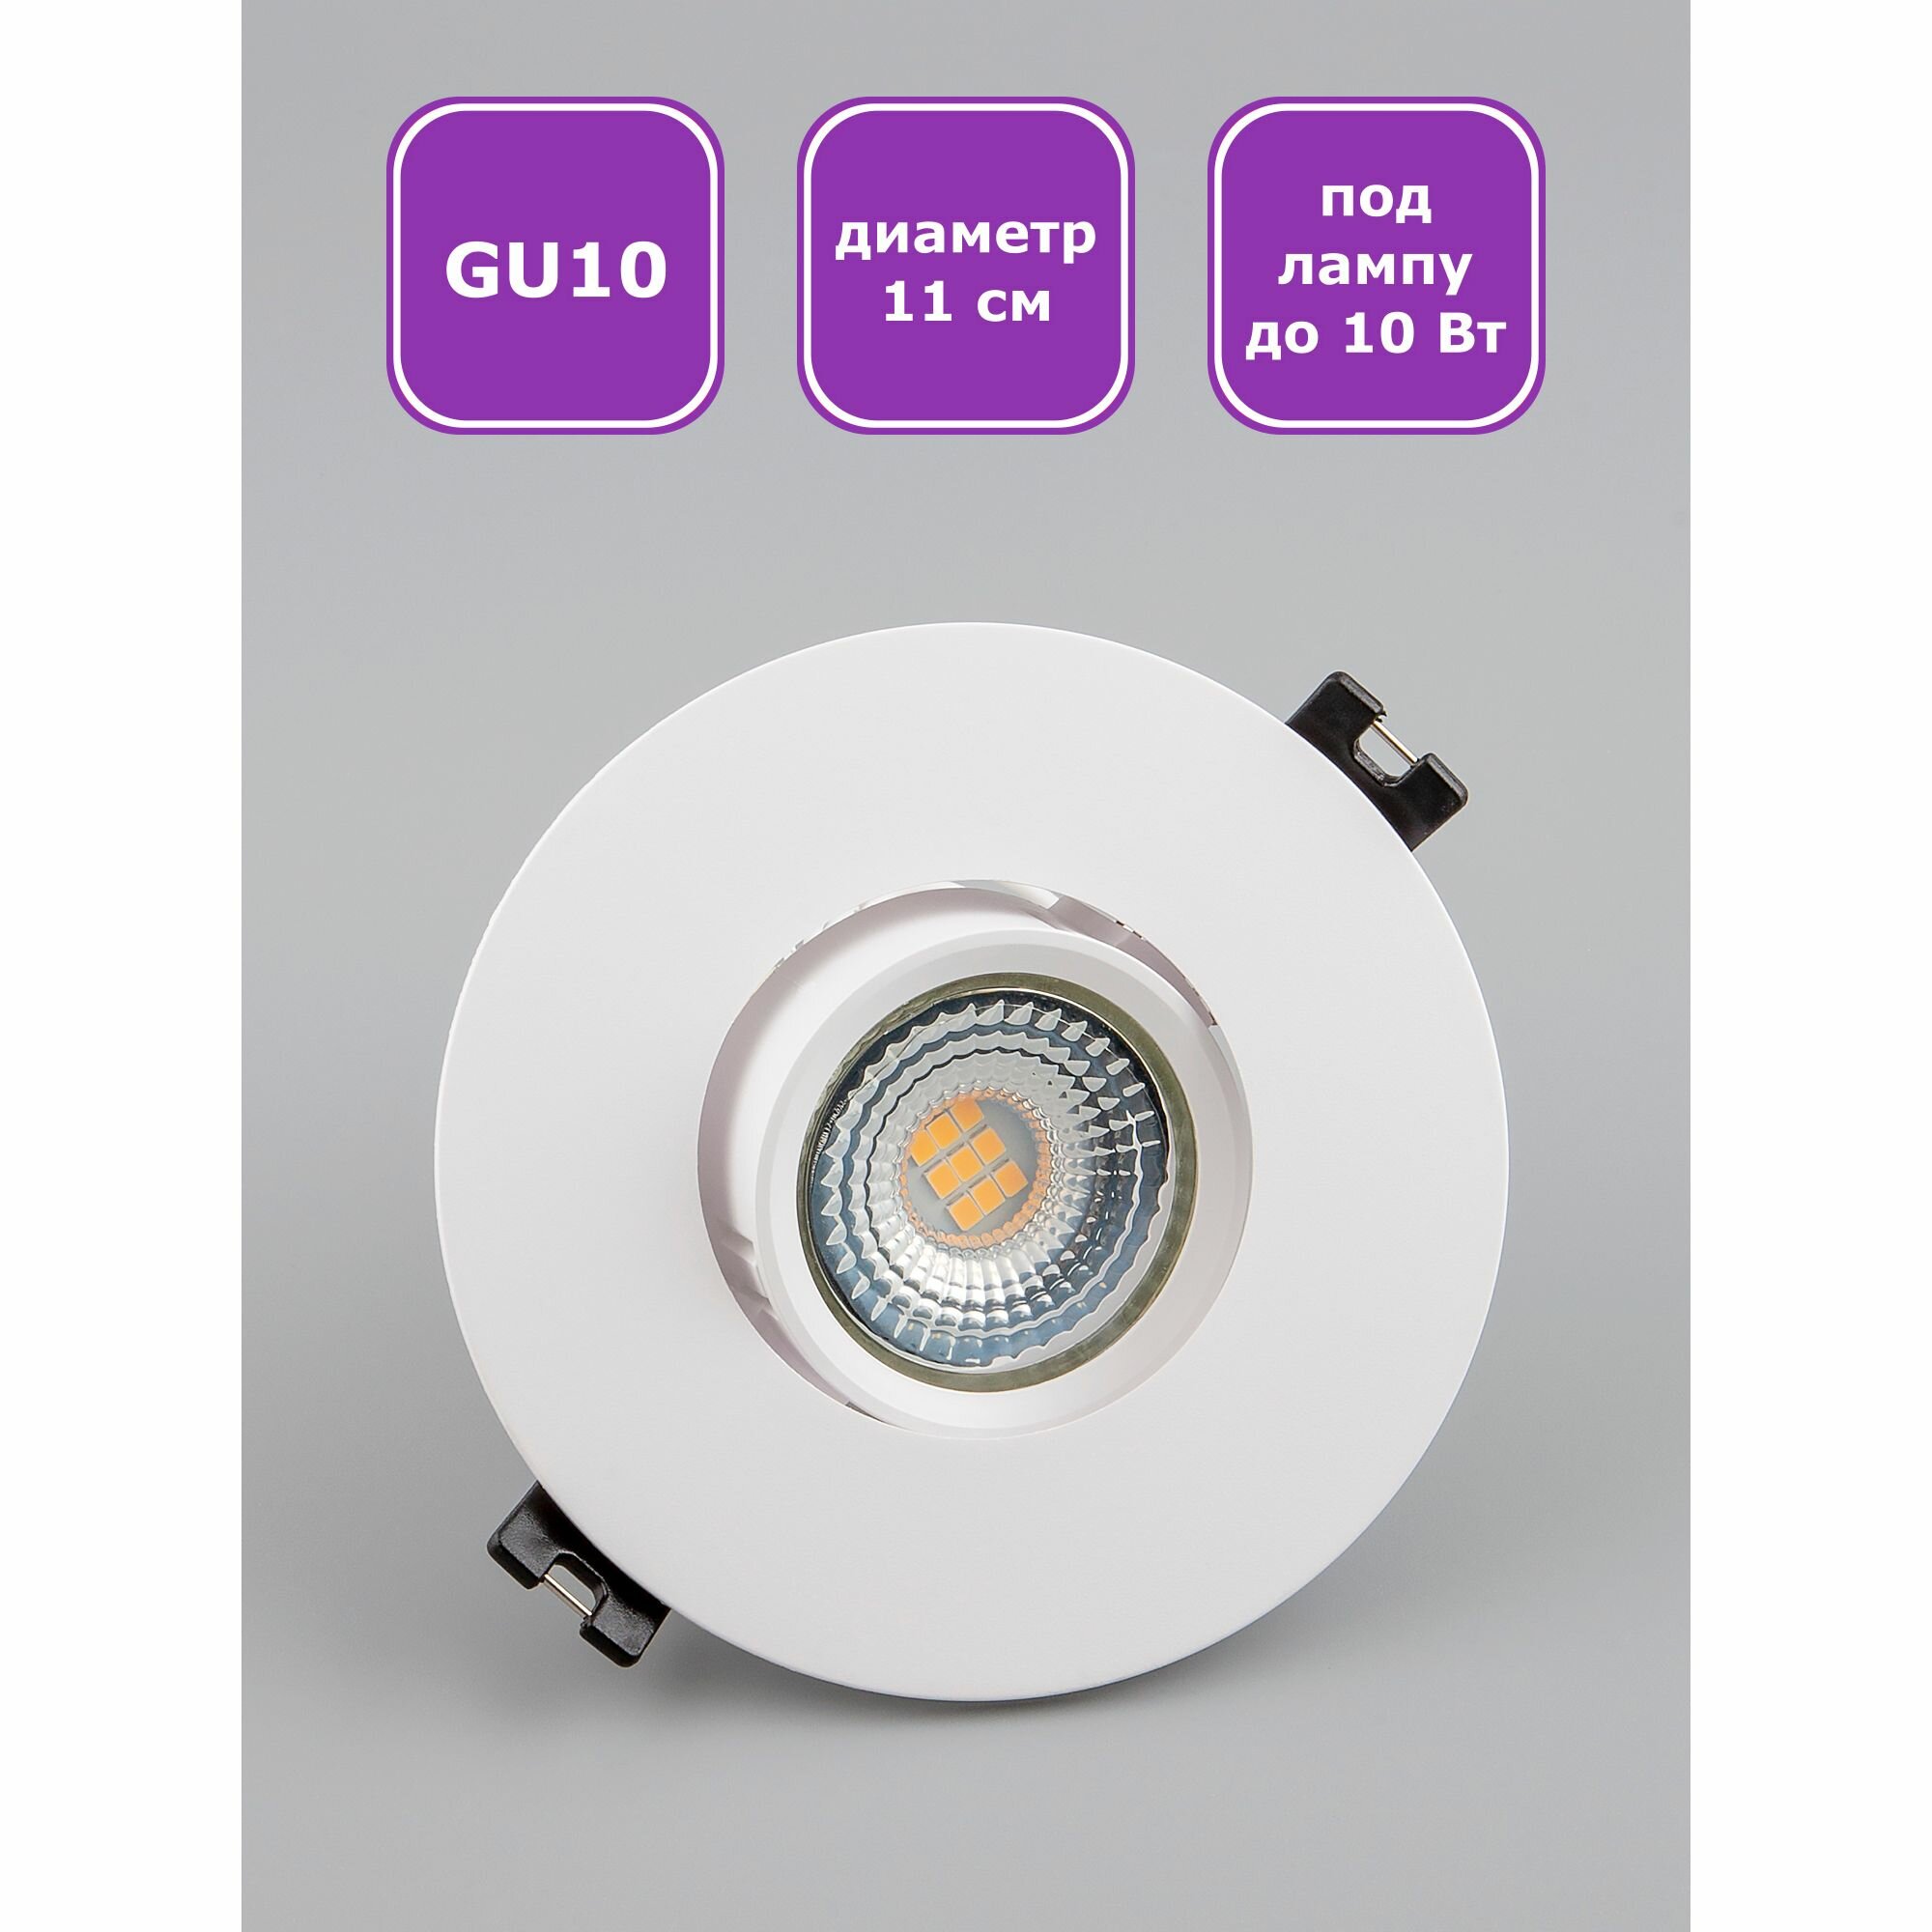 Светильник потолочный встраиваемый Maple Lamp ROUND, RS-04-01R-WHITE, белый, GU10